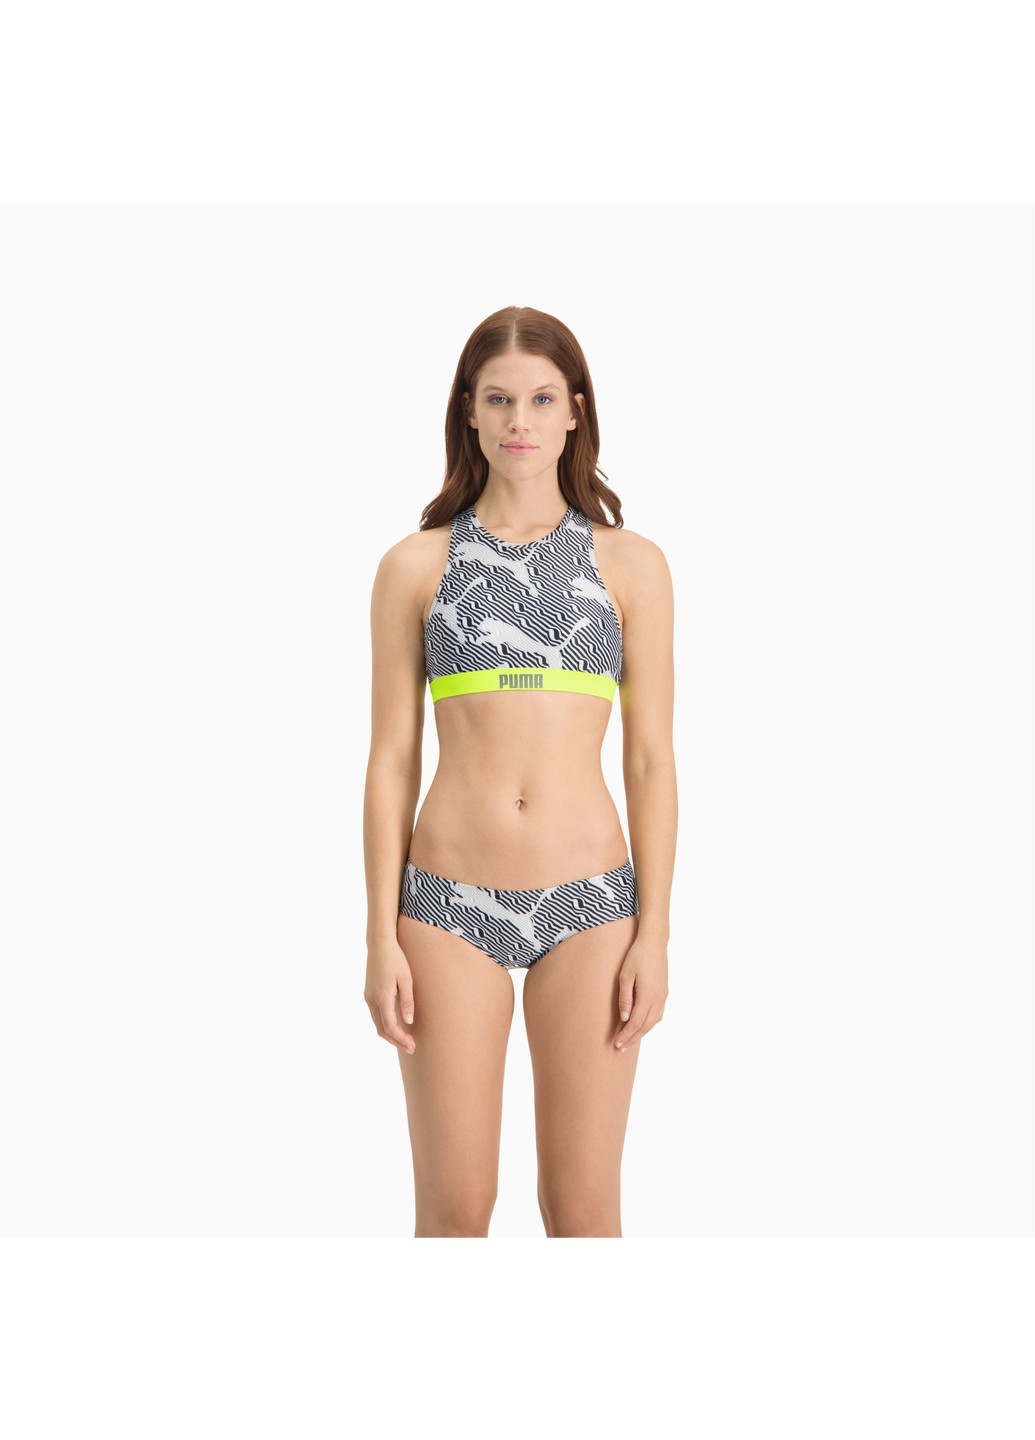 Лиф для плавания Swim Women's All-Over-Print High Neck Top Puma однотонный серый спортивный